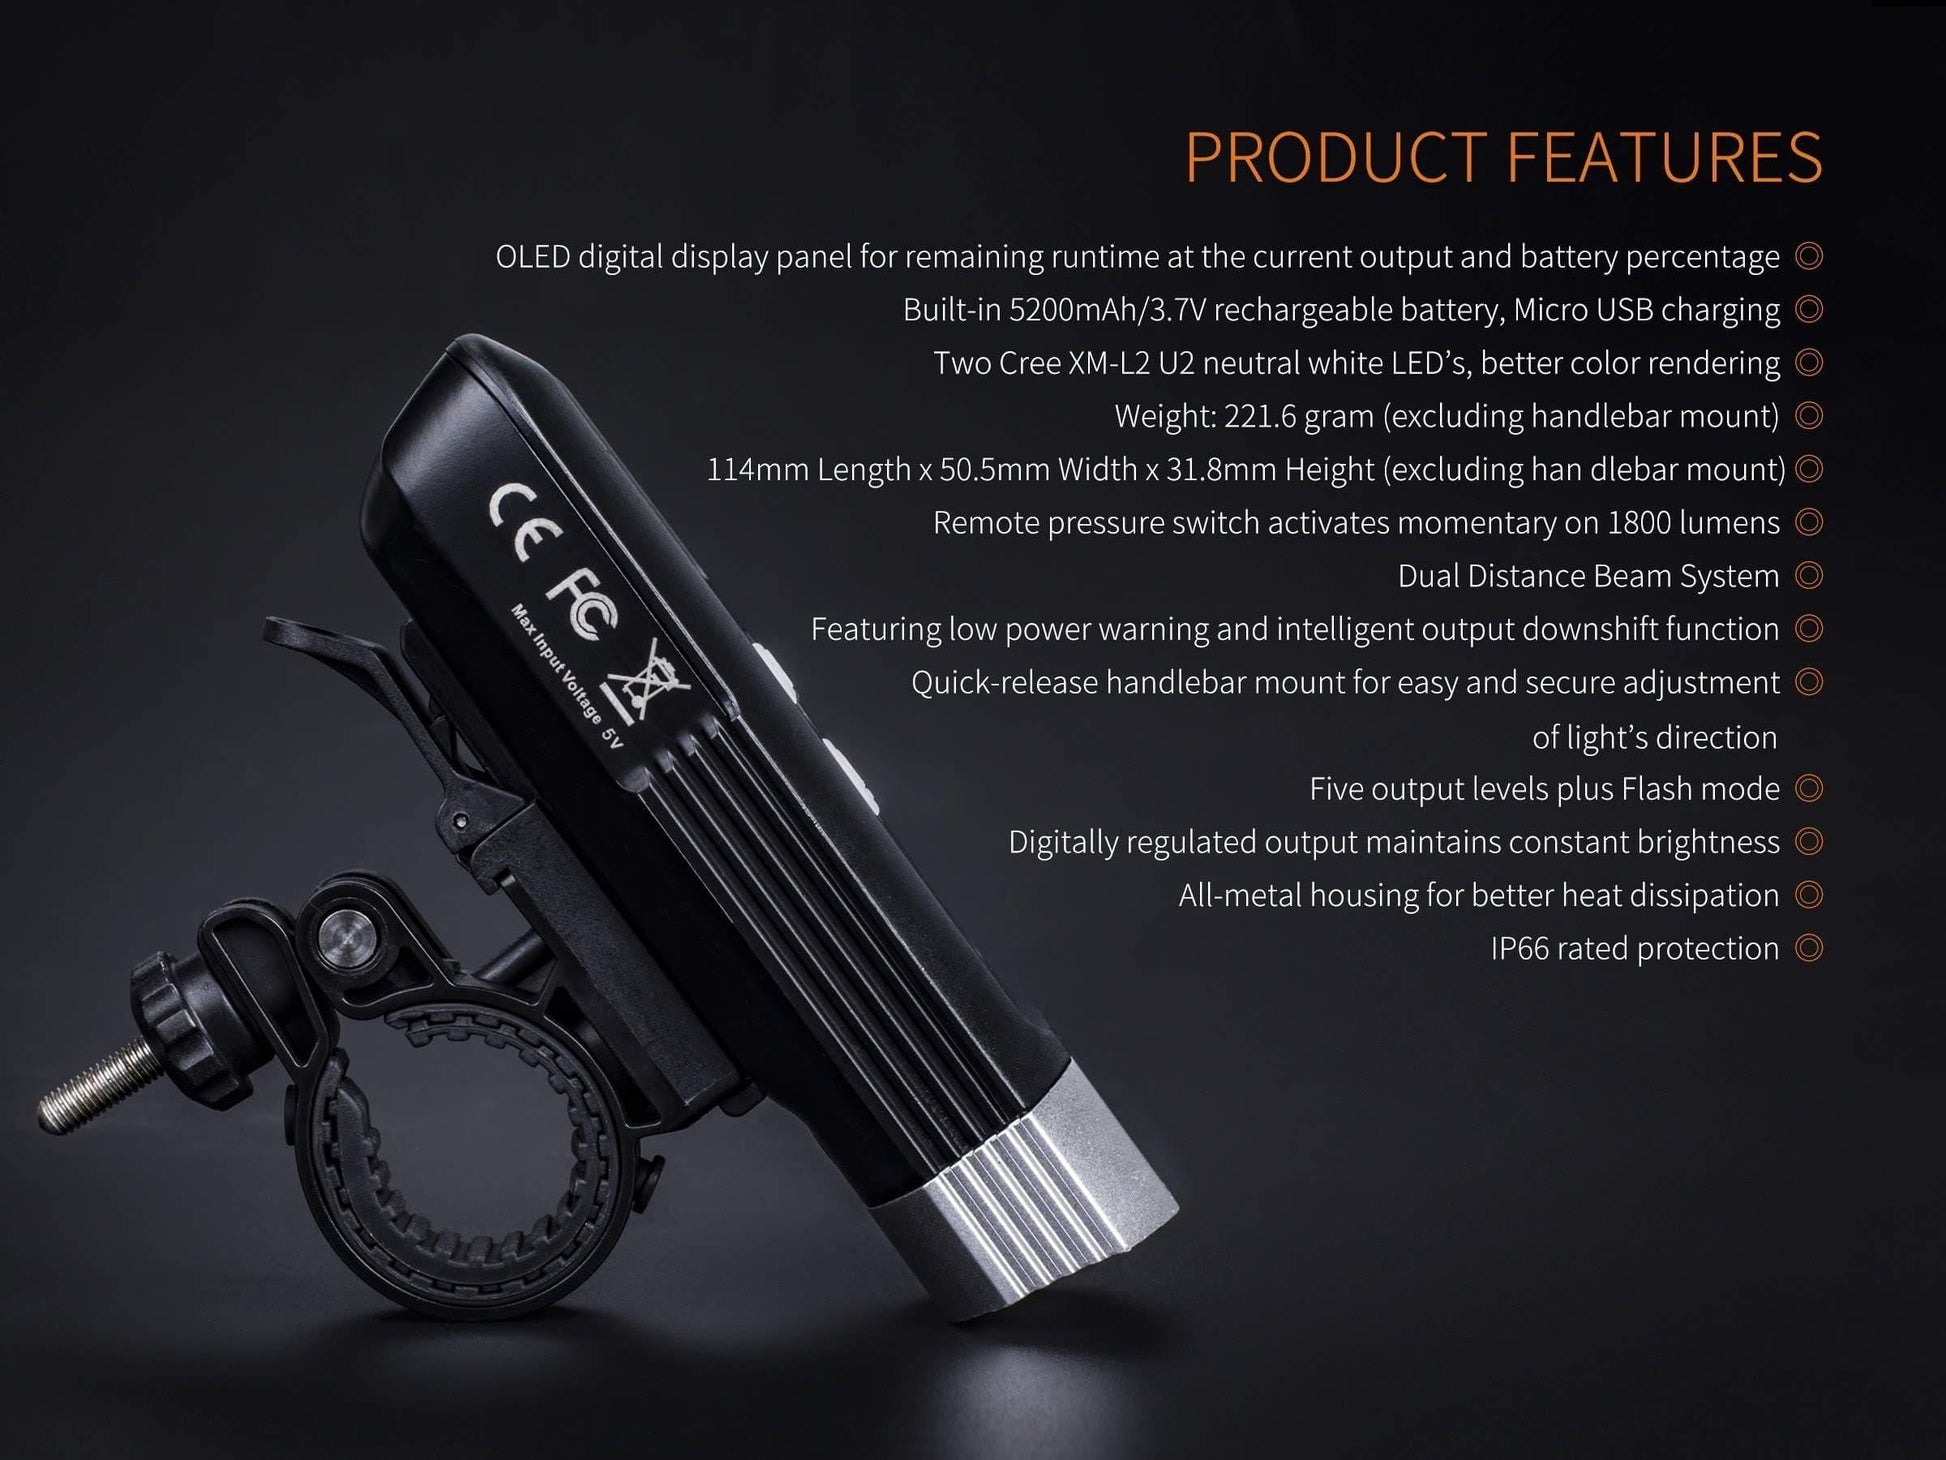 Fenix BC30R 2017 Edition - 1800 Lumens - avec batterie interne et chargeur USB - écran OLED Site Officiel FENIX® - Votre boutique en ligne Fenix®